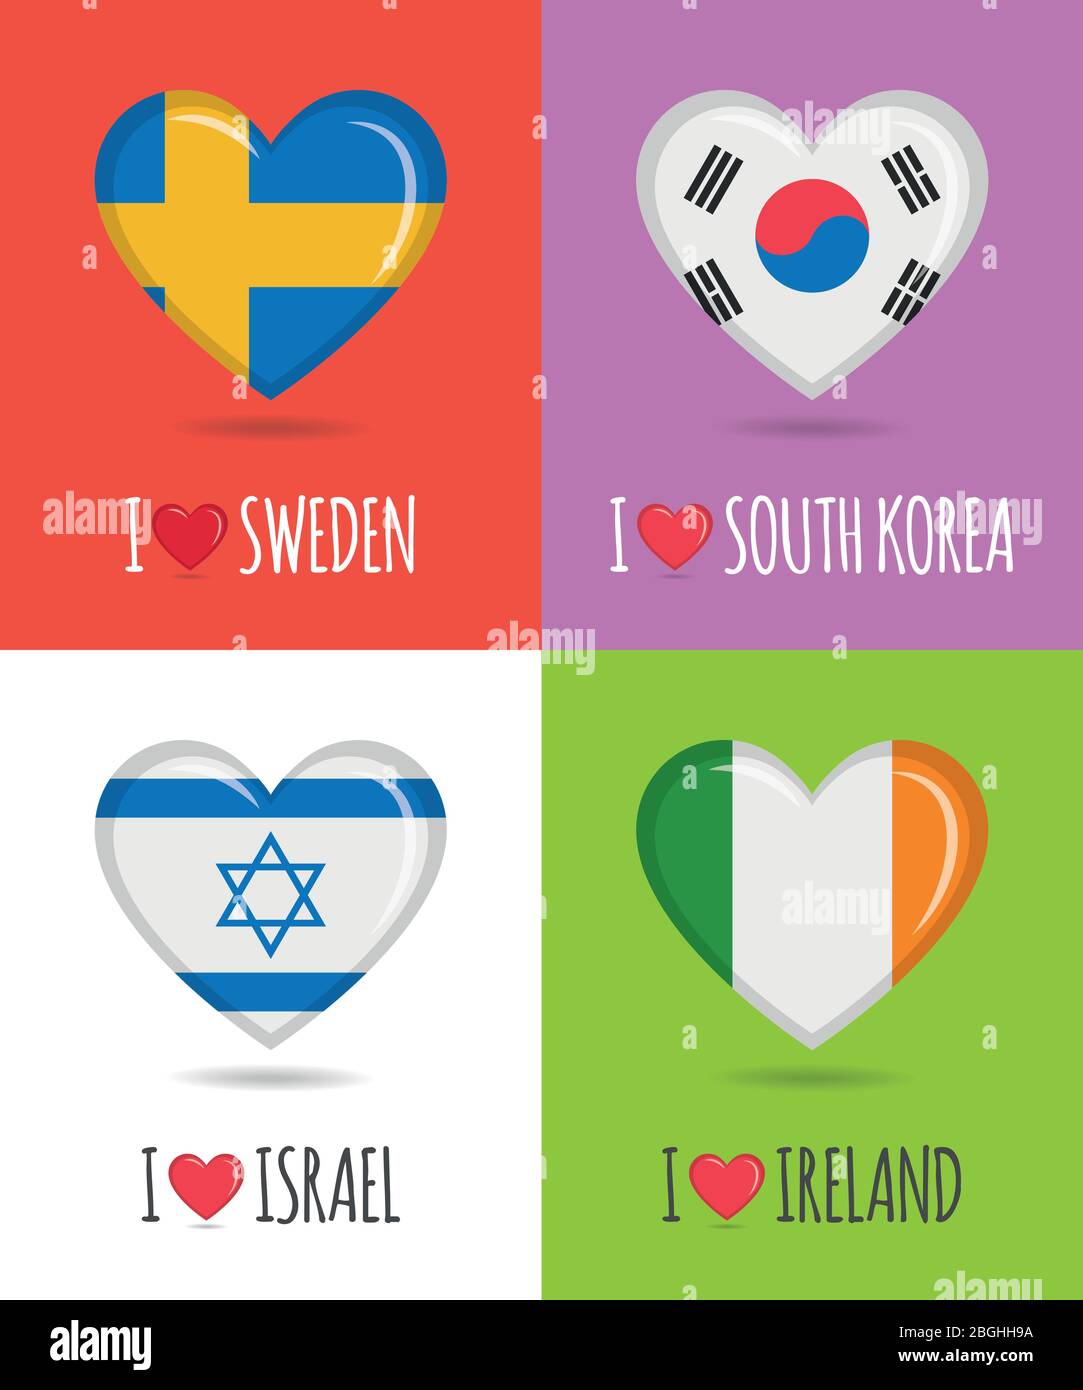 Affiches épris et colorées de Suède, de Corée du Sud, d'Israël et d'Irlande avec drapeau national en forme de coeur et illustration vectorielle de texte Illustration de Vecteur